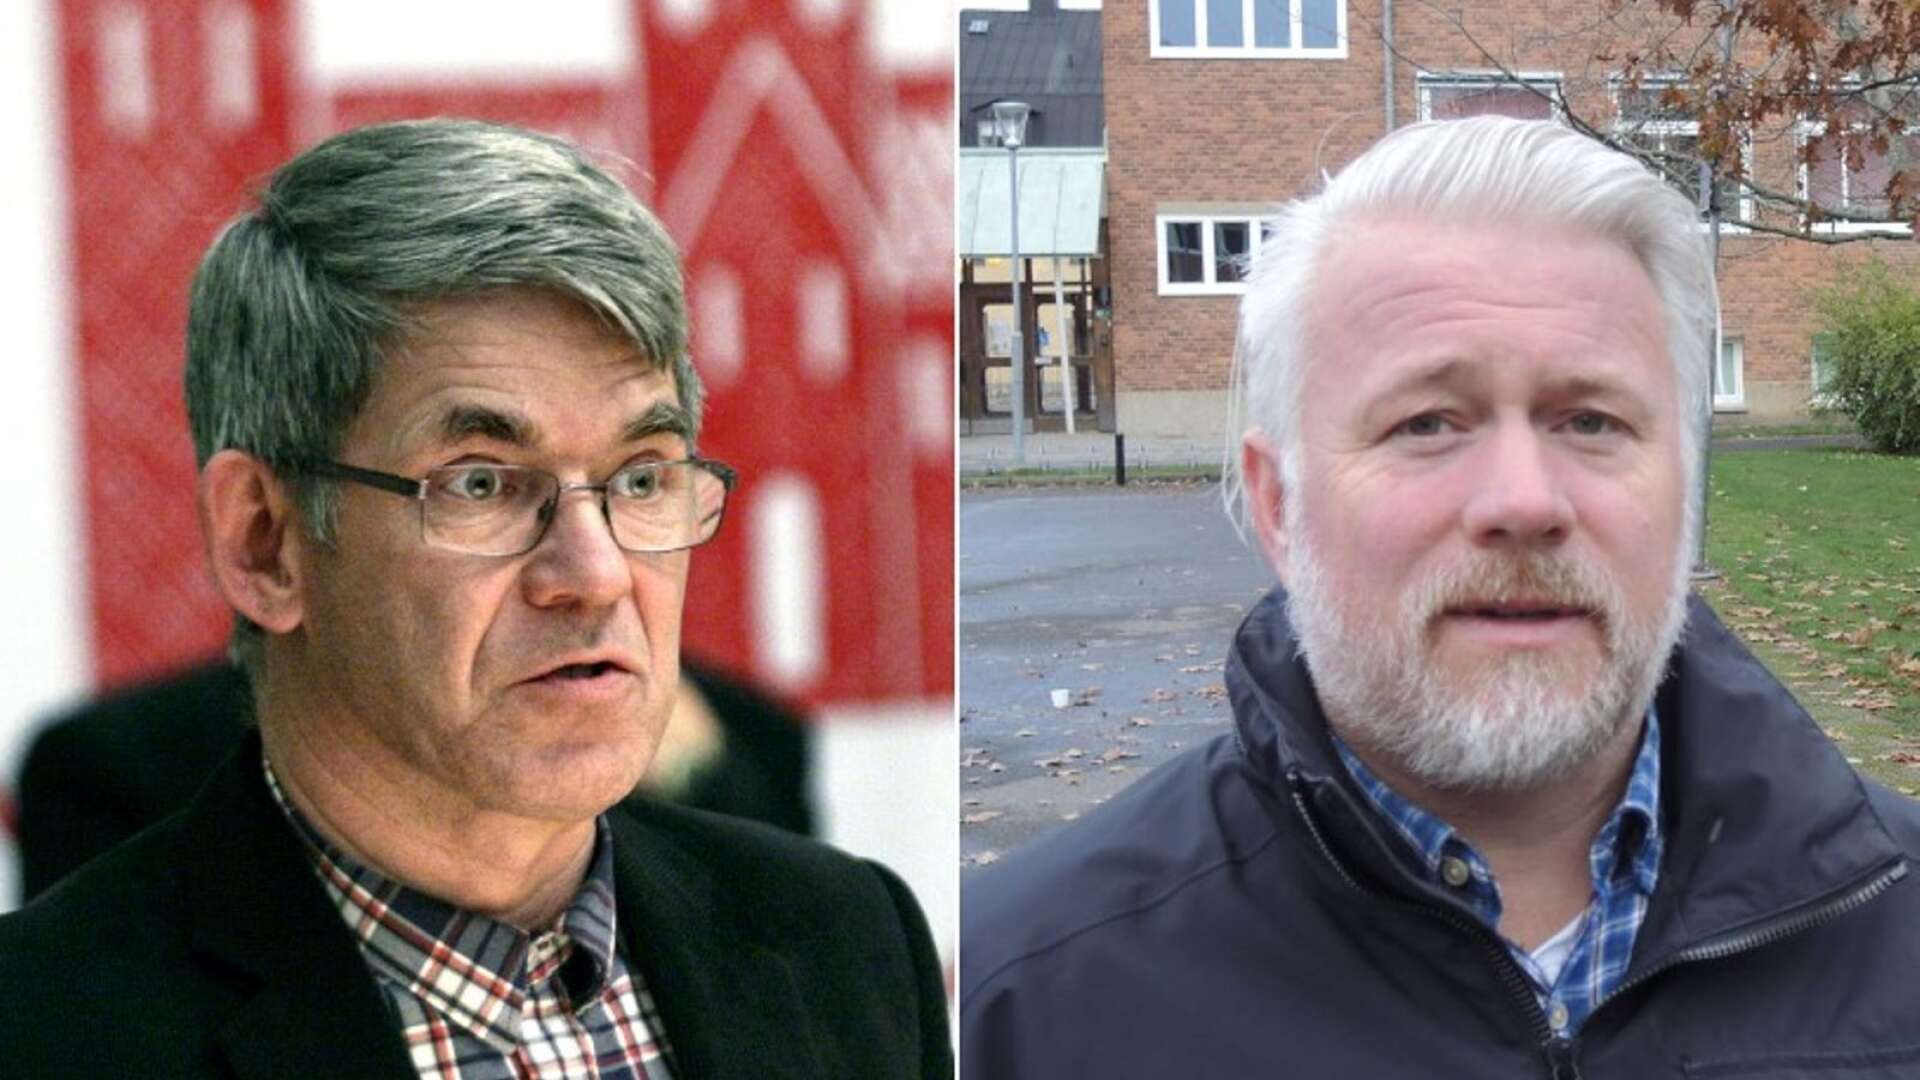 Kristdemokraterna gör en rockad i kommunstyrelsen i Skara. Leif Brohede (till vänster) blir ersättare och Tanjo Andersson går in som ordinarie ledamot.